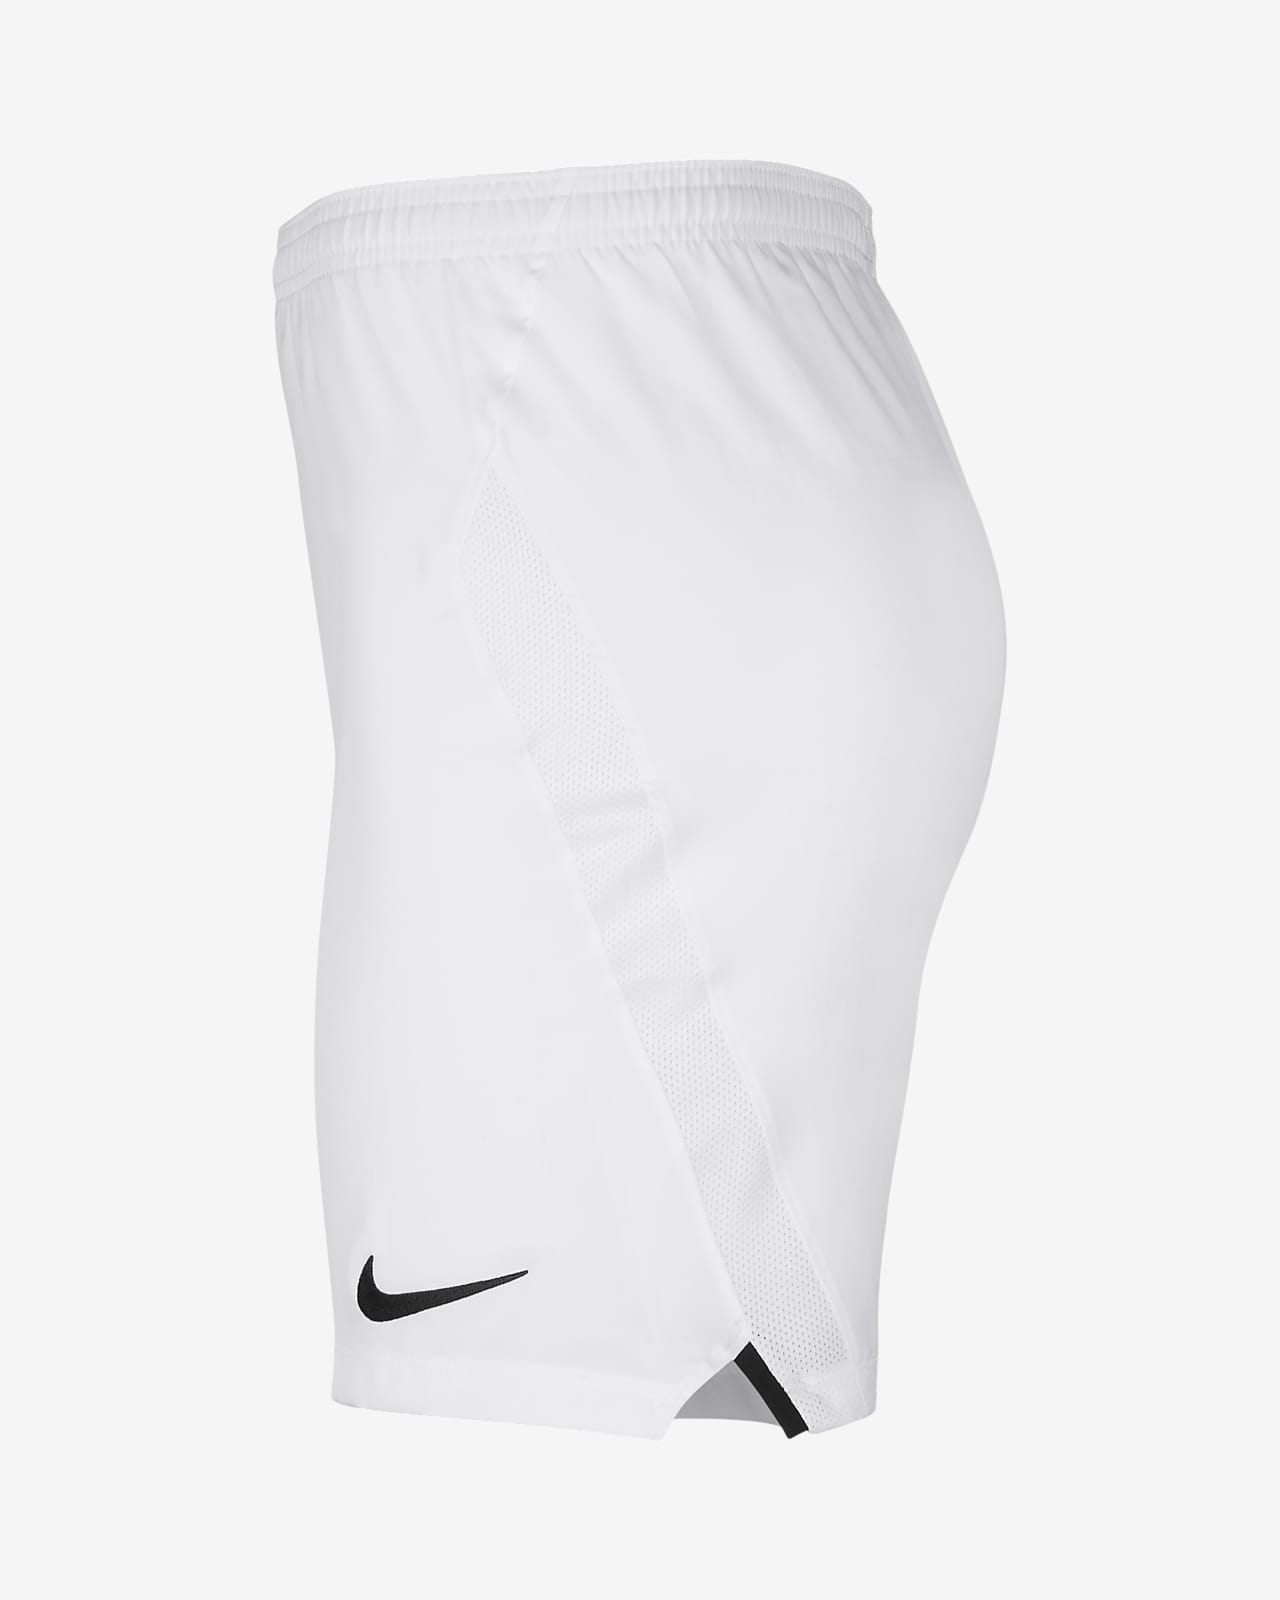 Nike公式 ナイキ Dri Fit レーザー 4 メンズ サッカーショートパンツ オンラインストア 通販サイト